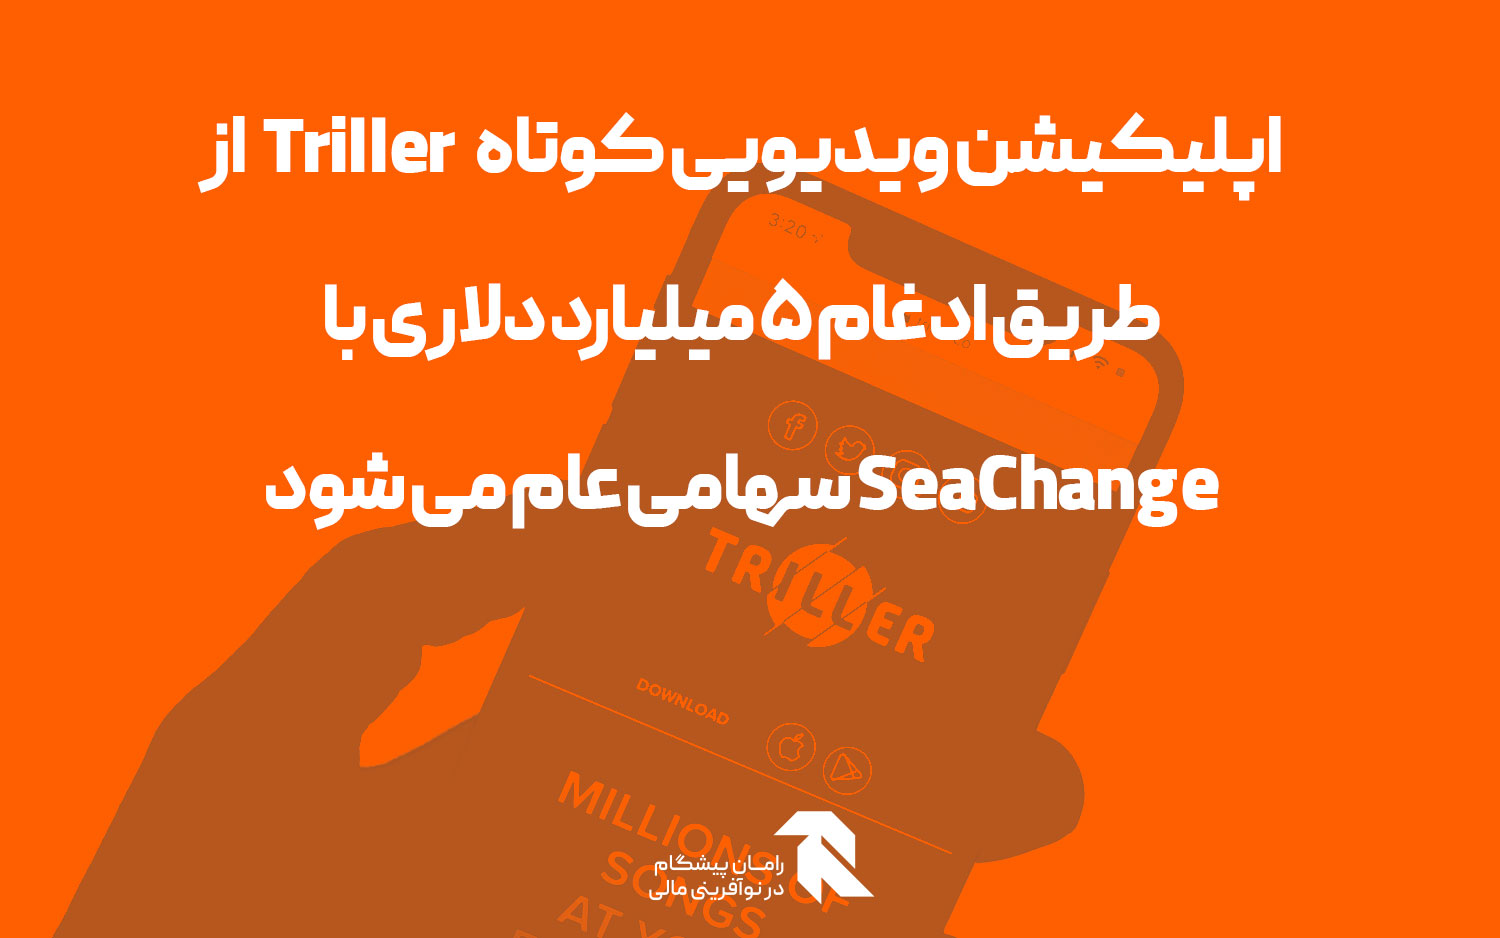 اپلیکیشن ویدیویی کوتاه Triller از طریق ادغام 5 میلیارد دلاری با SeaChange سهامی عام می شود